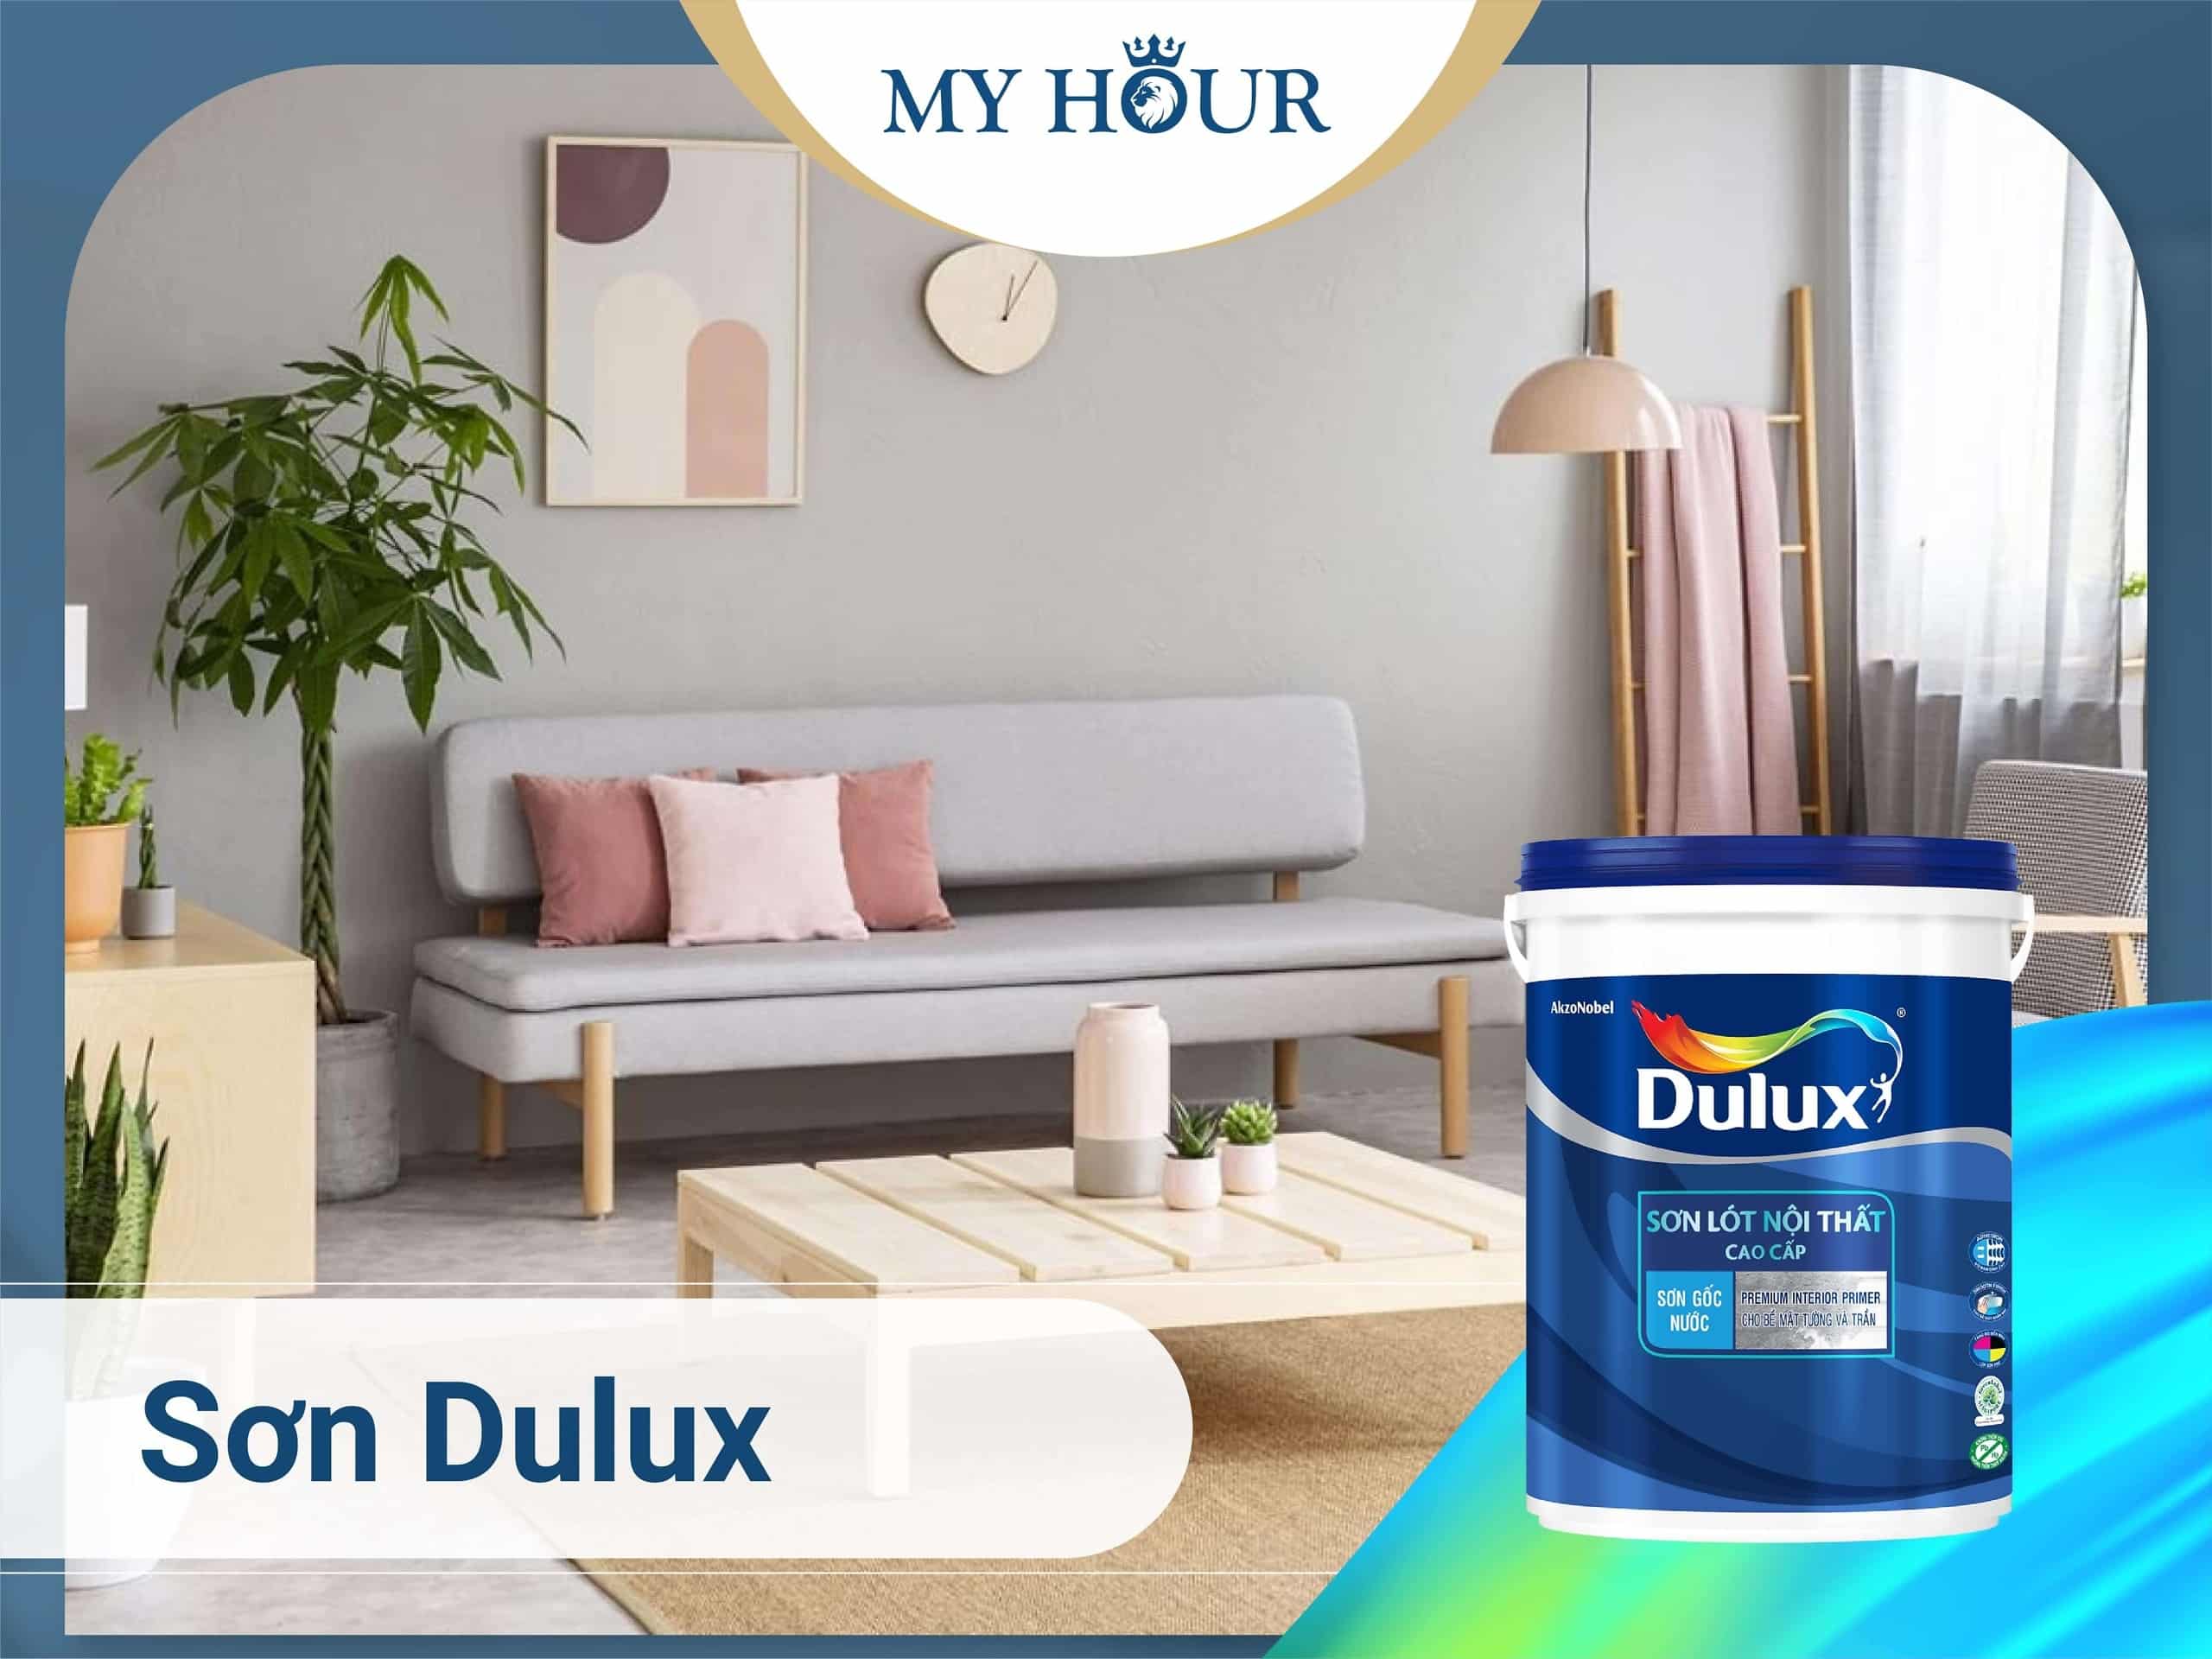 Sơn Dulux - Một trong những sơn tốt nhất trên thị trường hiện nay